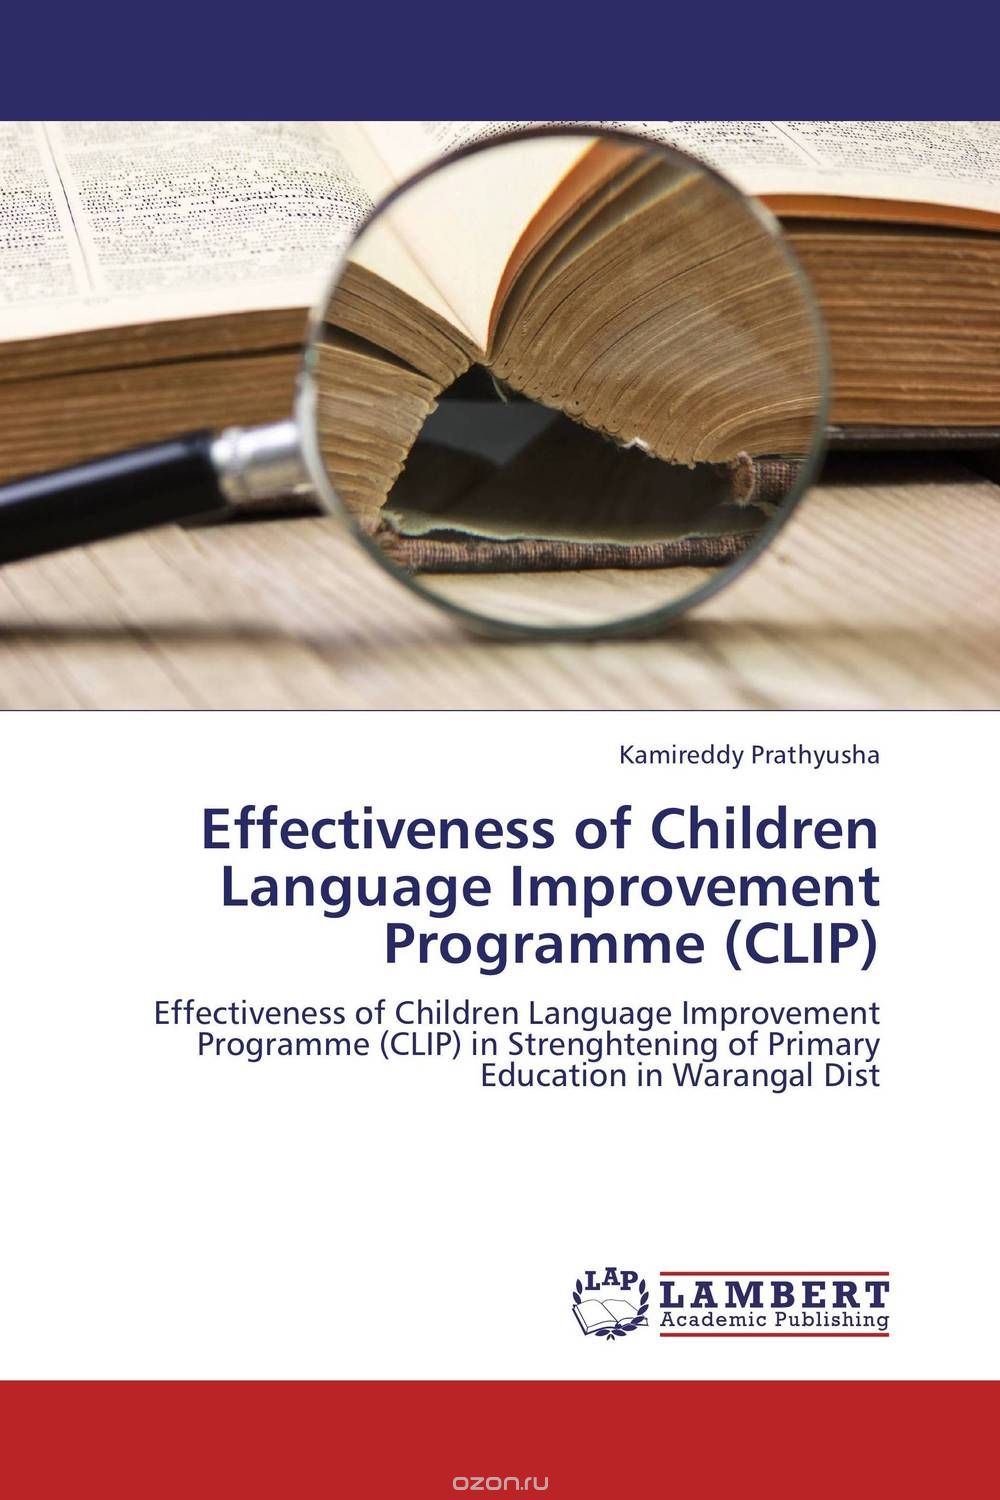 Скачать книгу "Effectiveness of Children Language Improvement Programme (CLIP)"